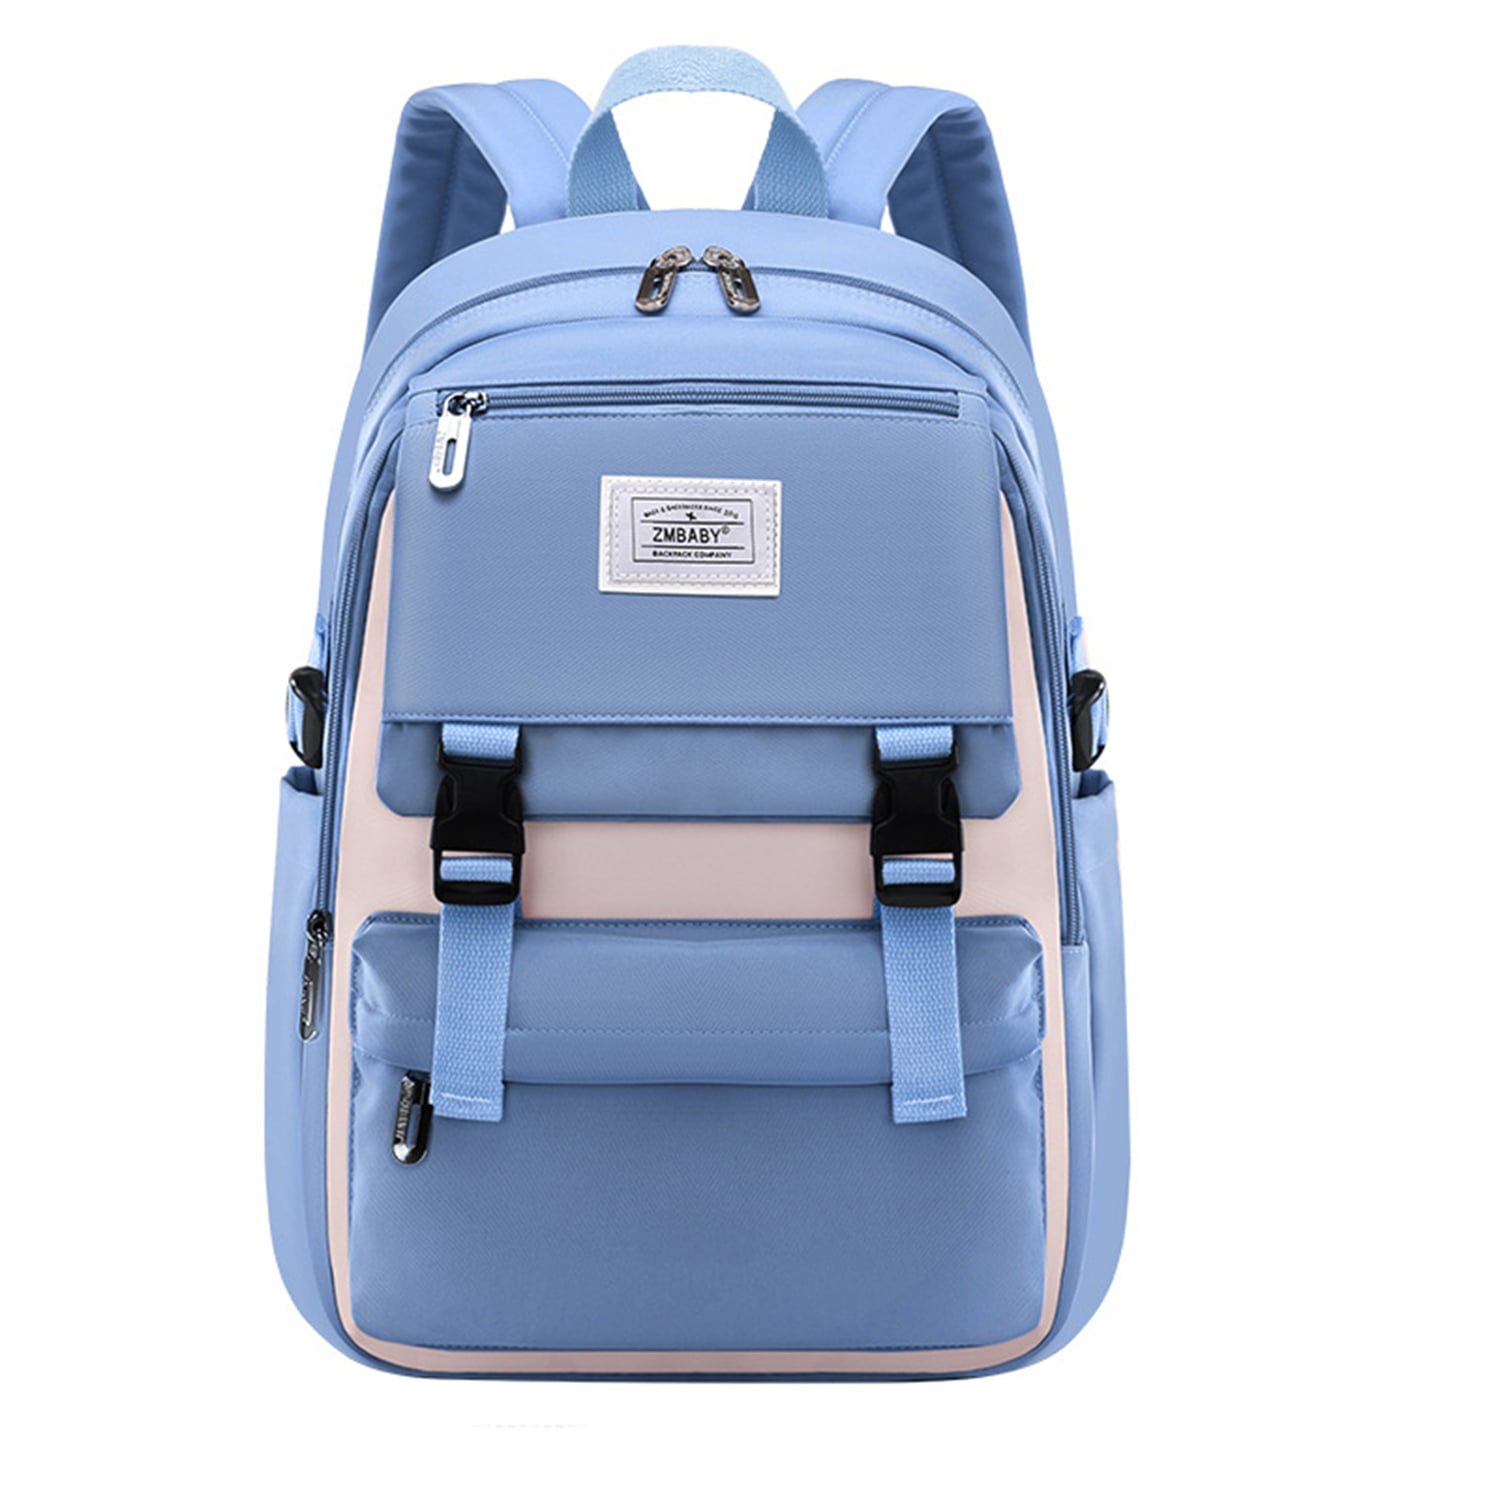 Girls Black Backpack Teenager School Bag Waterproof College Rucksack USB  Chargin | eBay